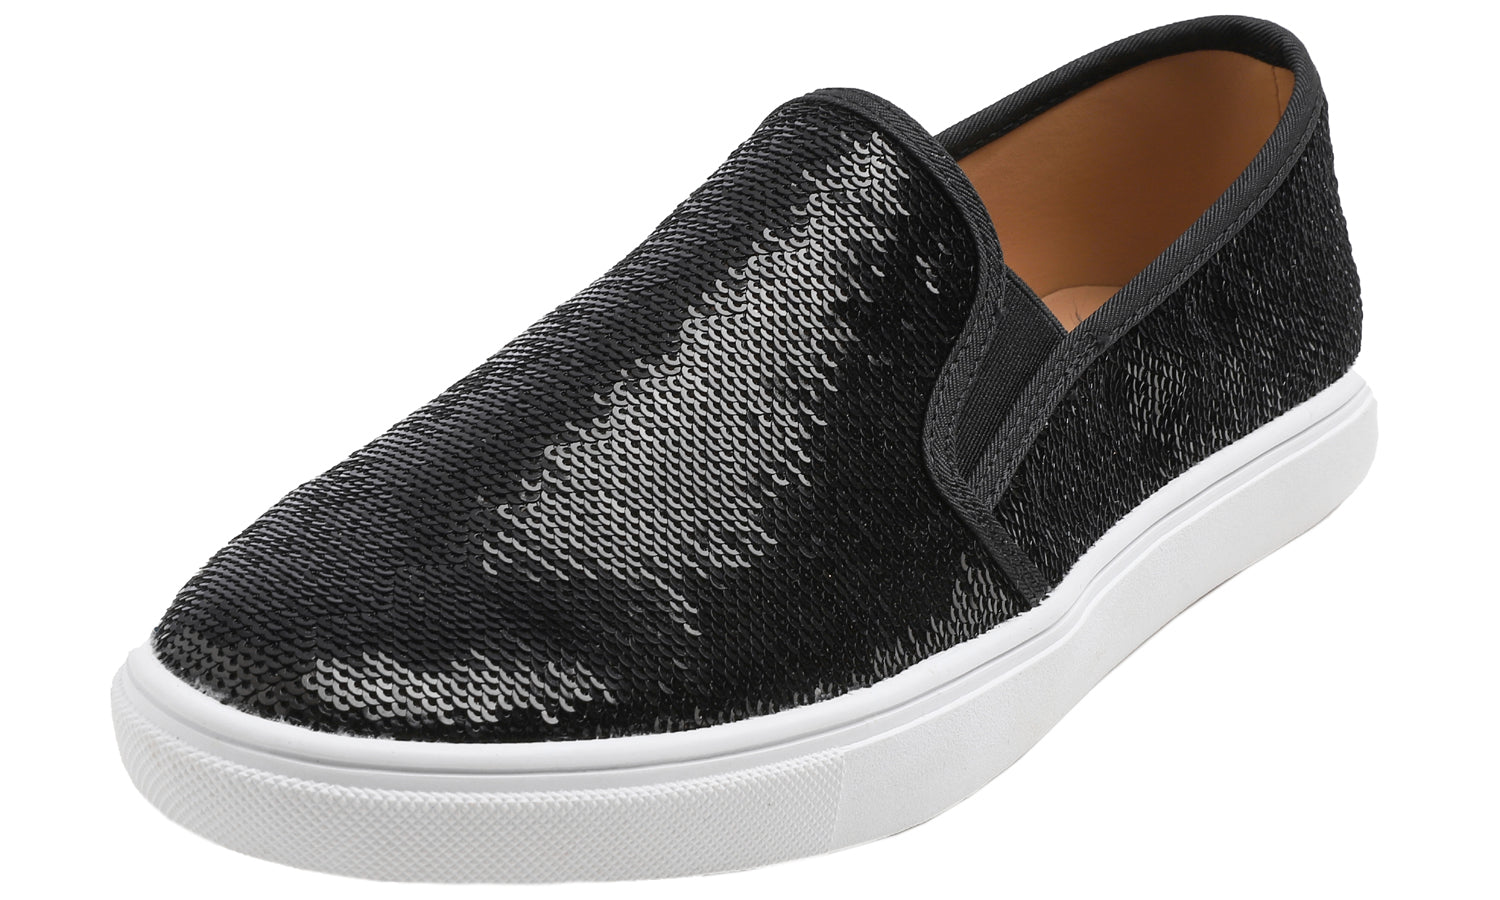 Women's Black Sequin On Sneaker Flat Loafers